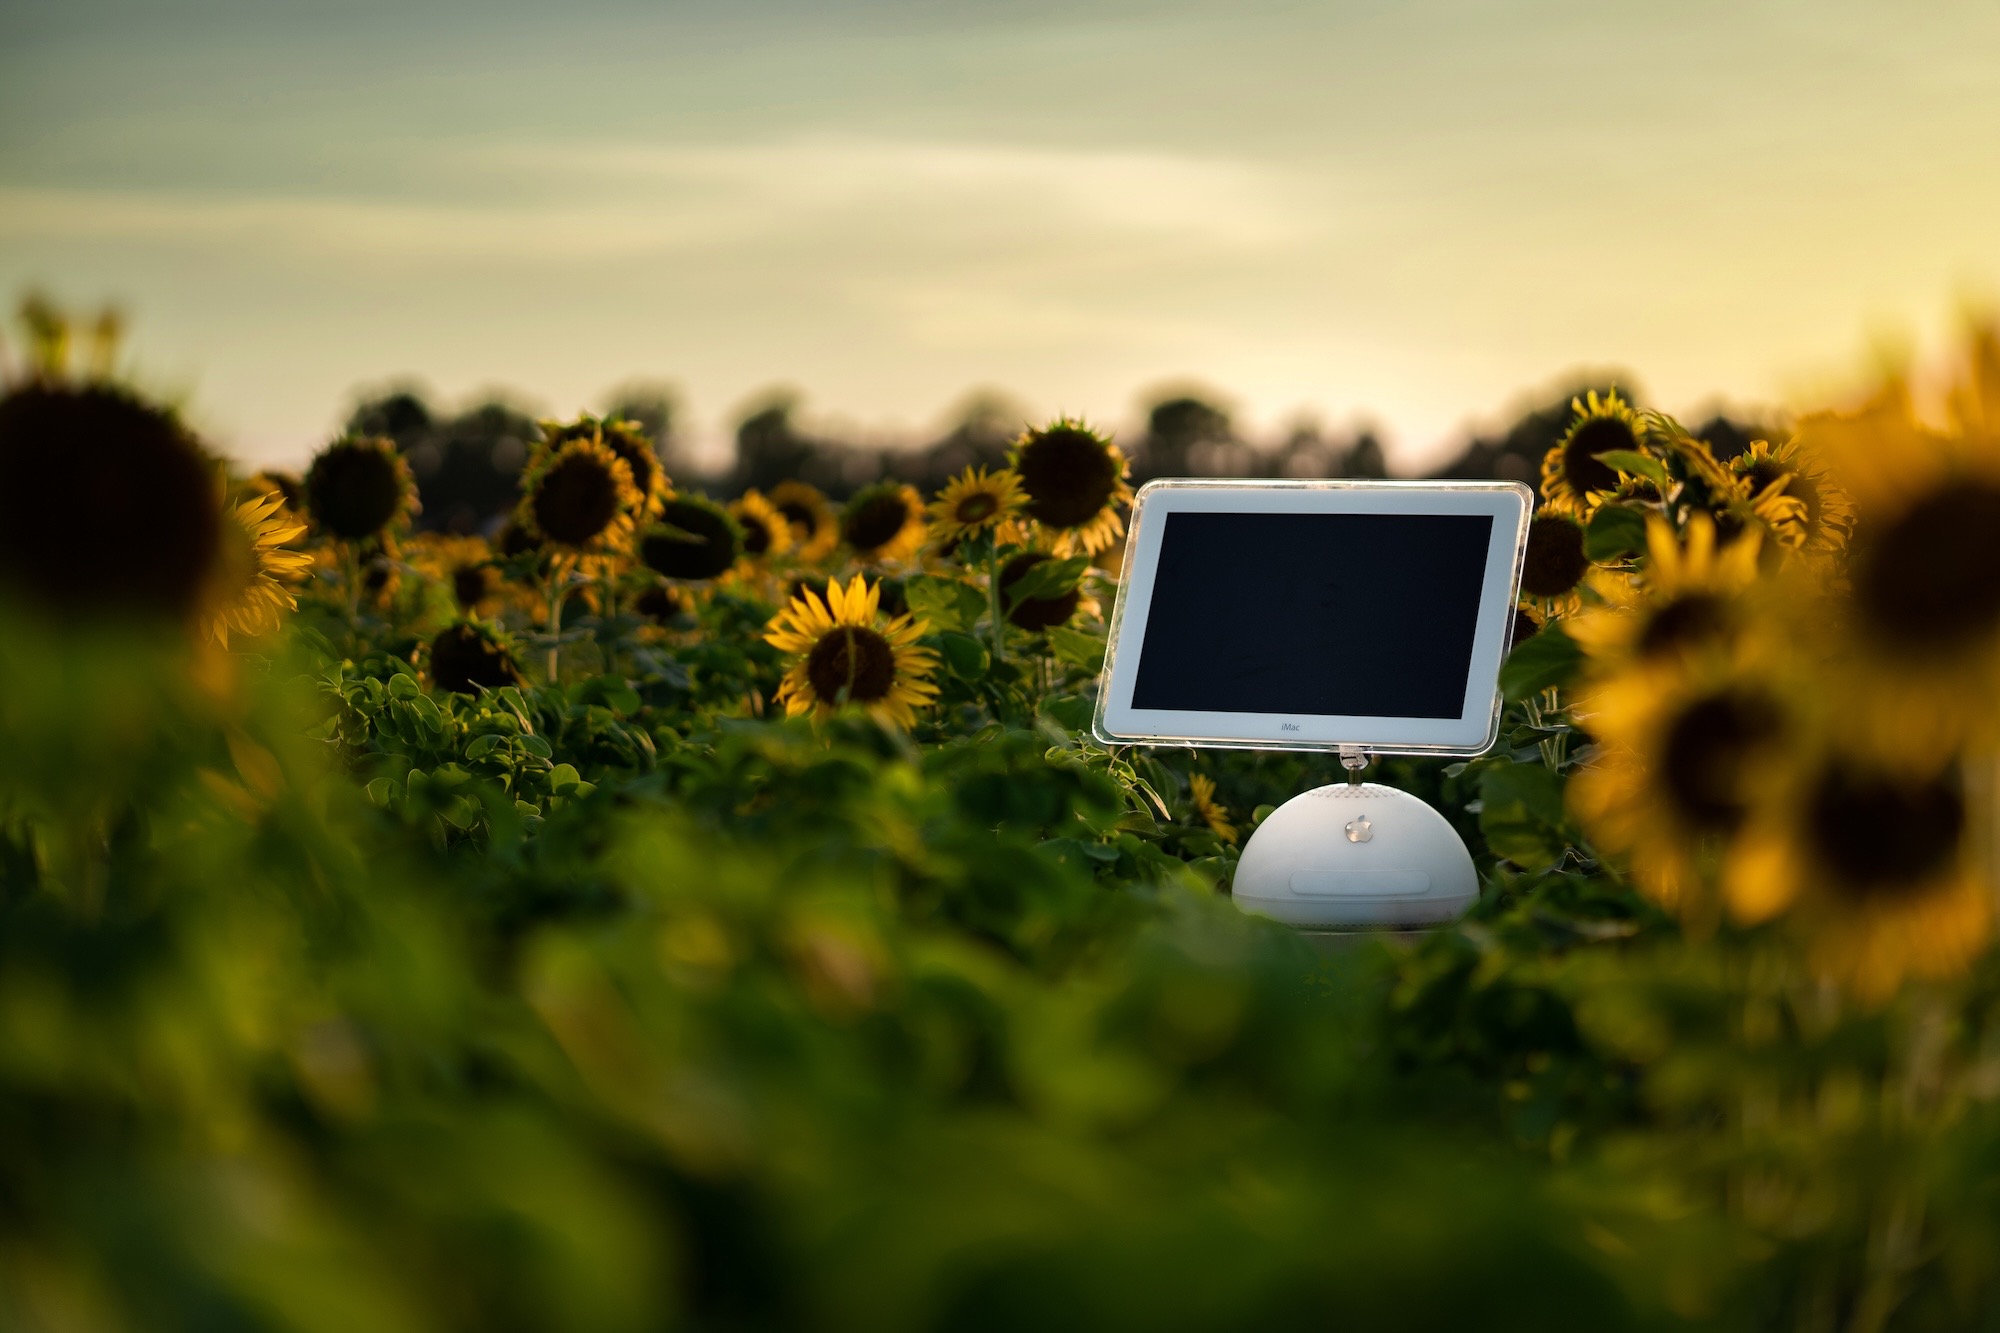 The "Sunflower" iMac G4